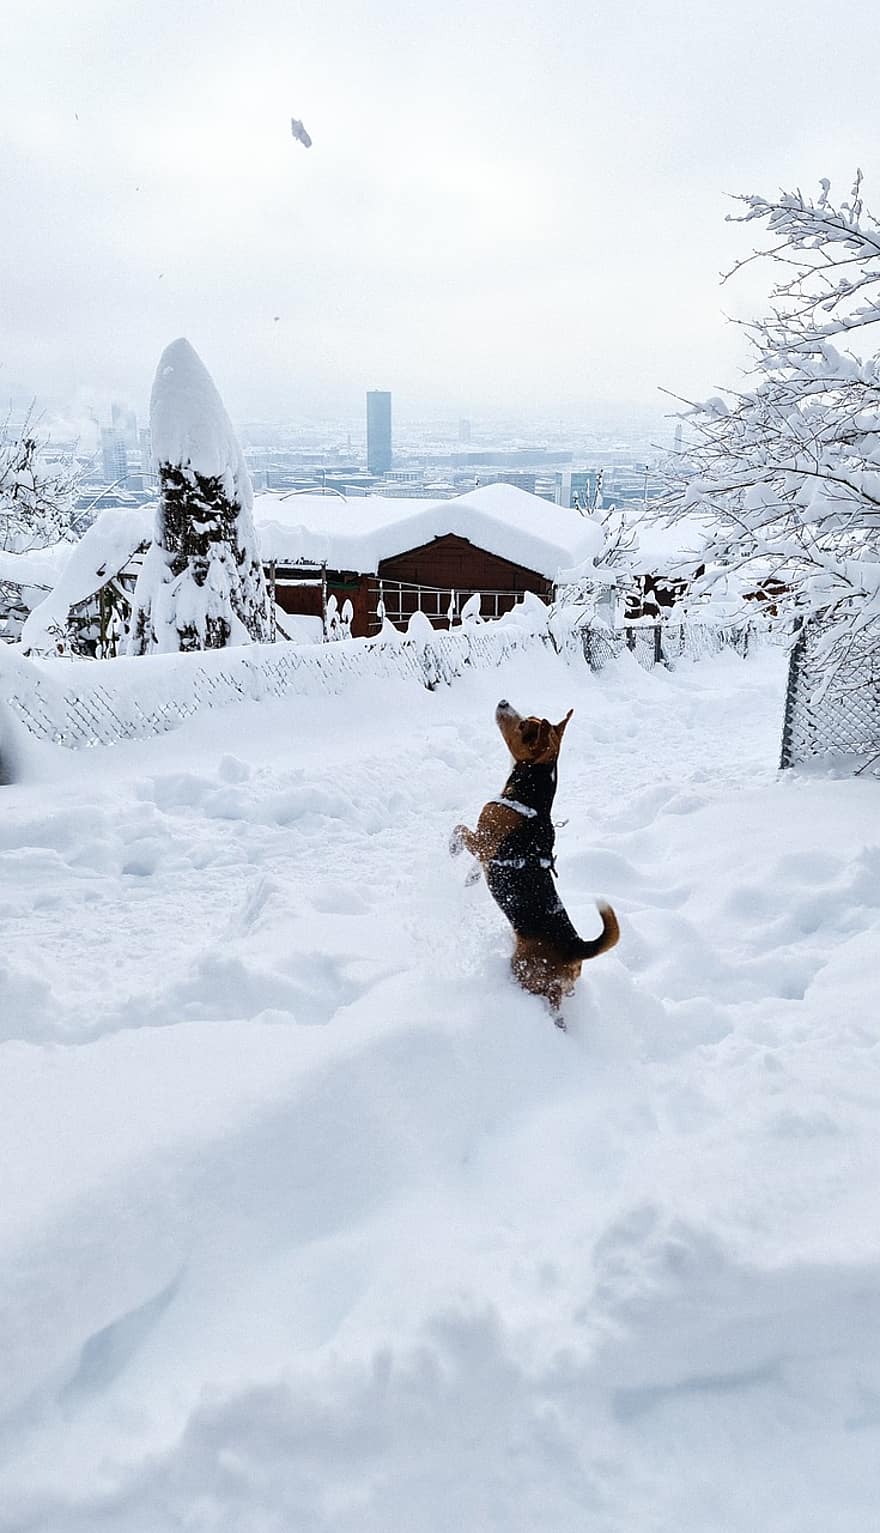 câine, zăpadă, iarnă, Joaca, animal de companie, jucăuş, câine jucăuș, acoperit cu zăpadă, de iarnă, bruma, geros